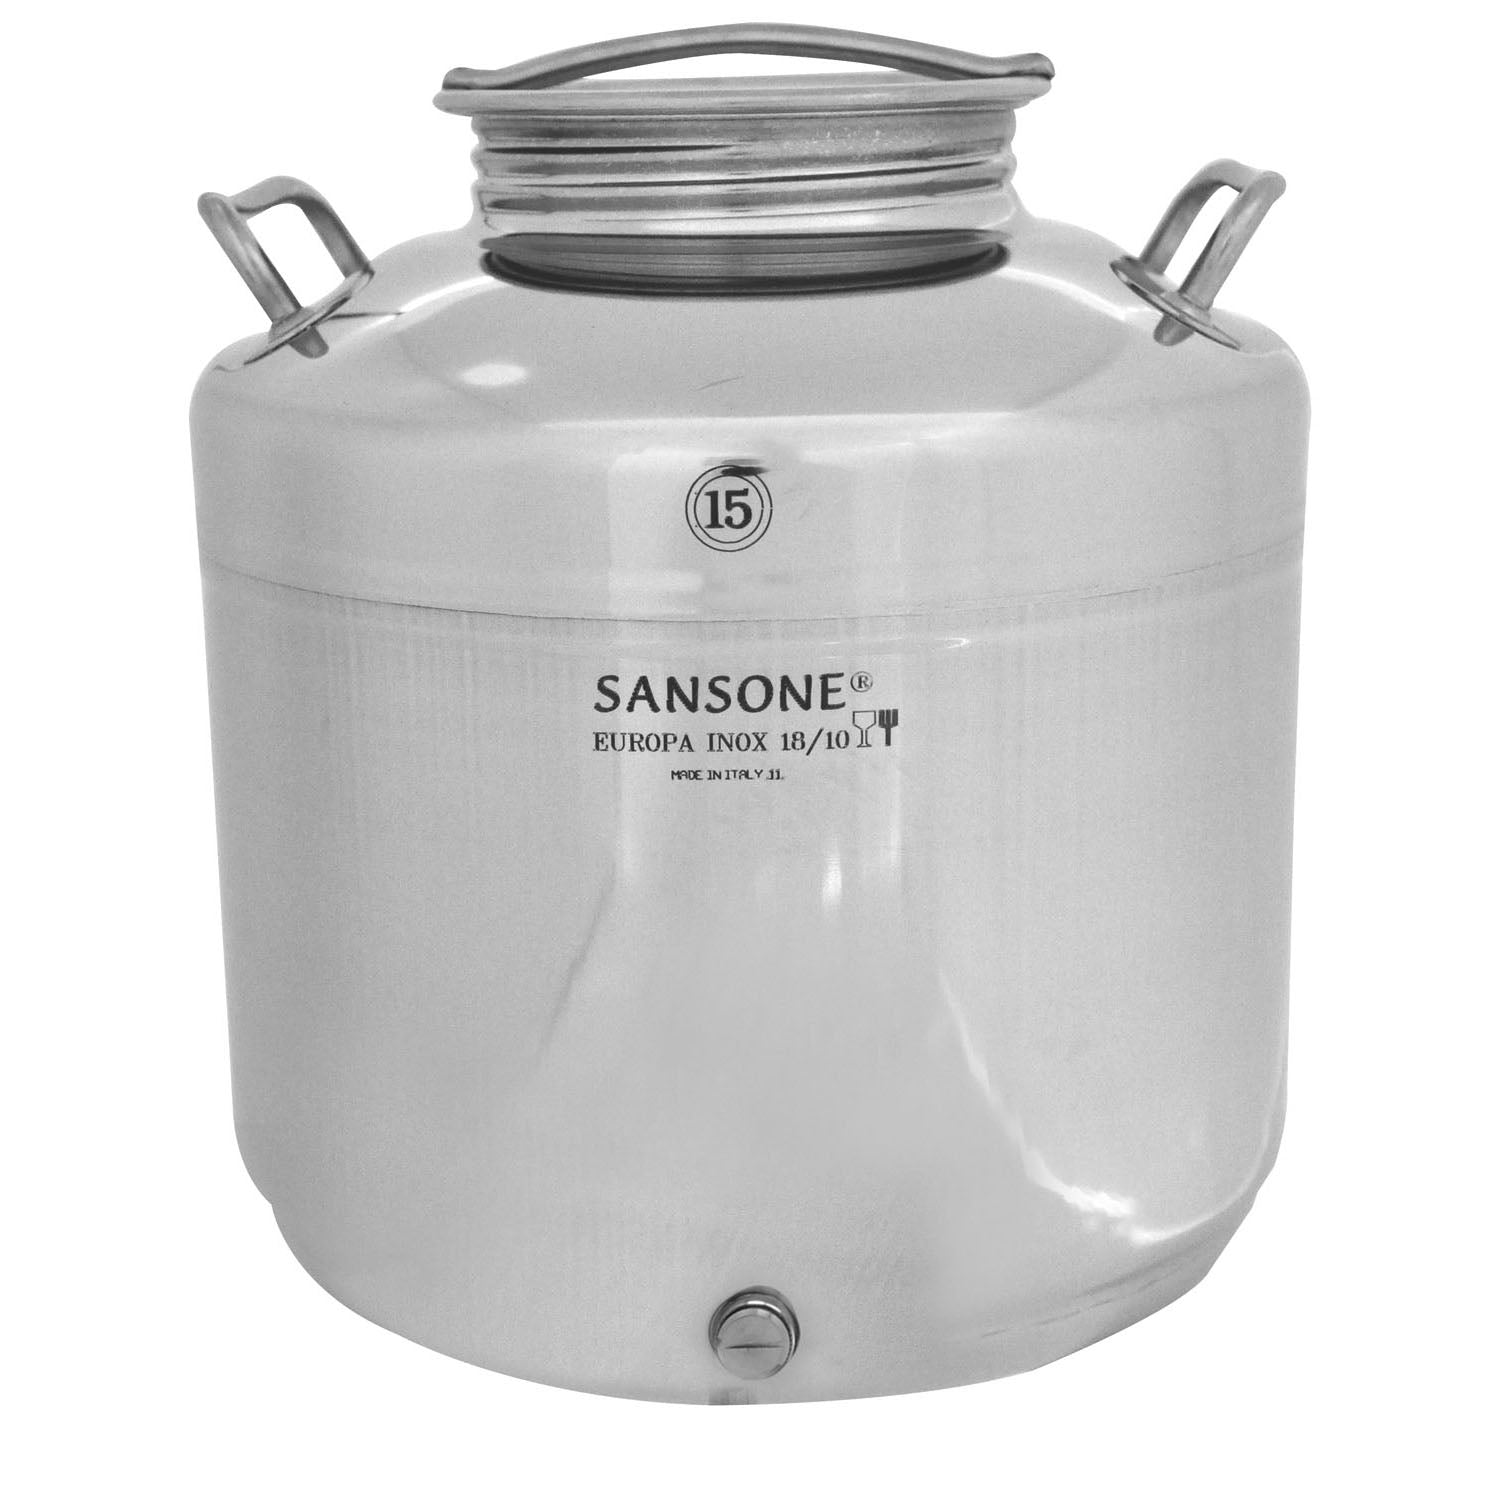 Sansone - contenitore per olio in acciaio inox 15 lt